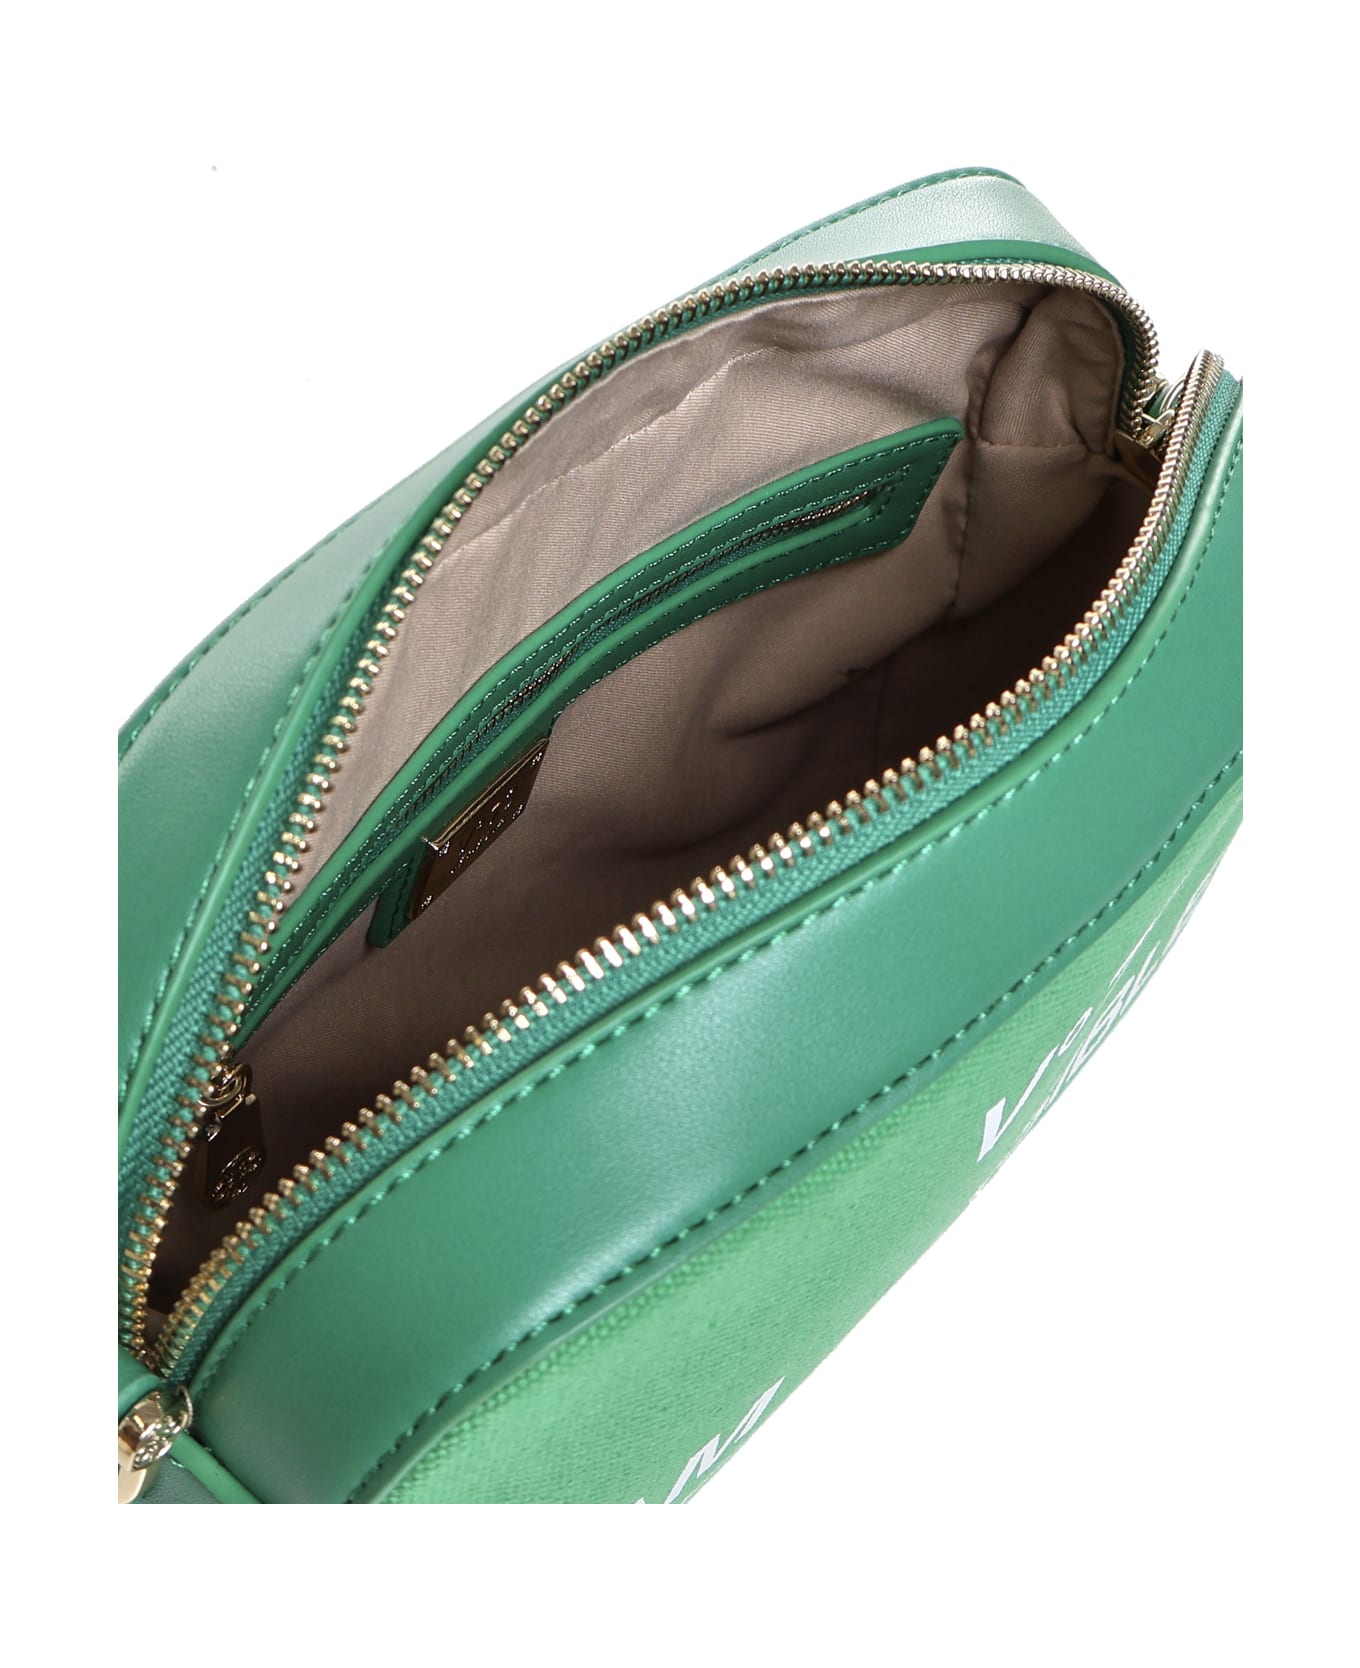 V73 Responsibility Shoulder Bag In Cotton - Green